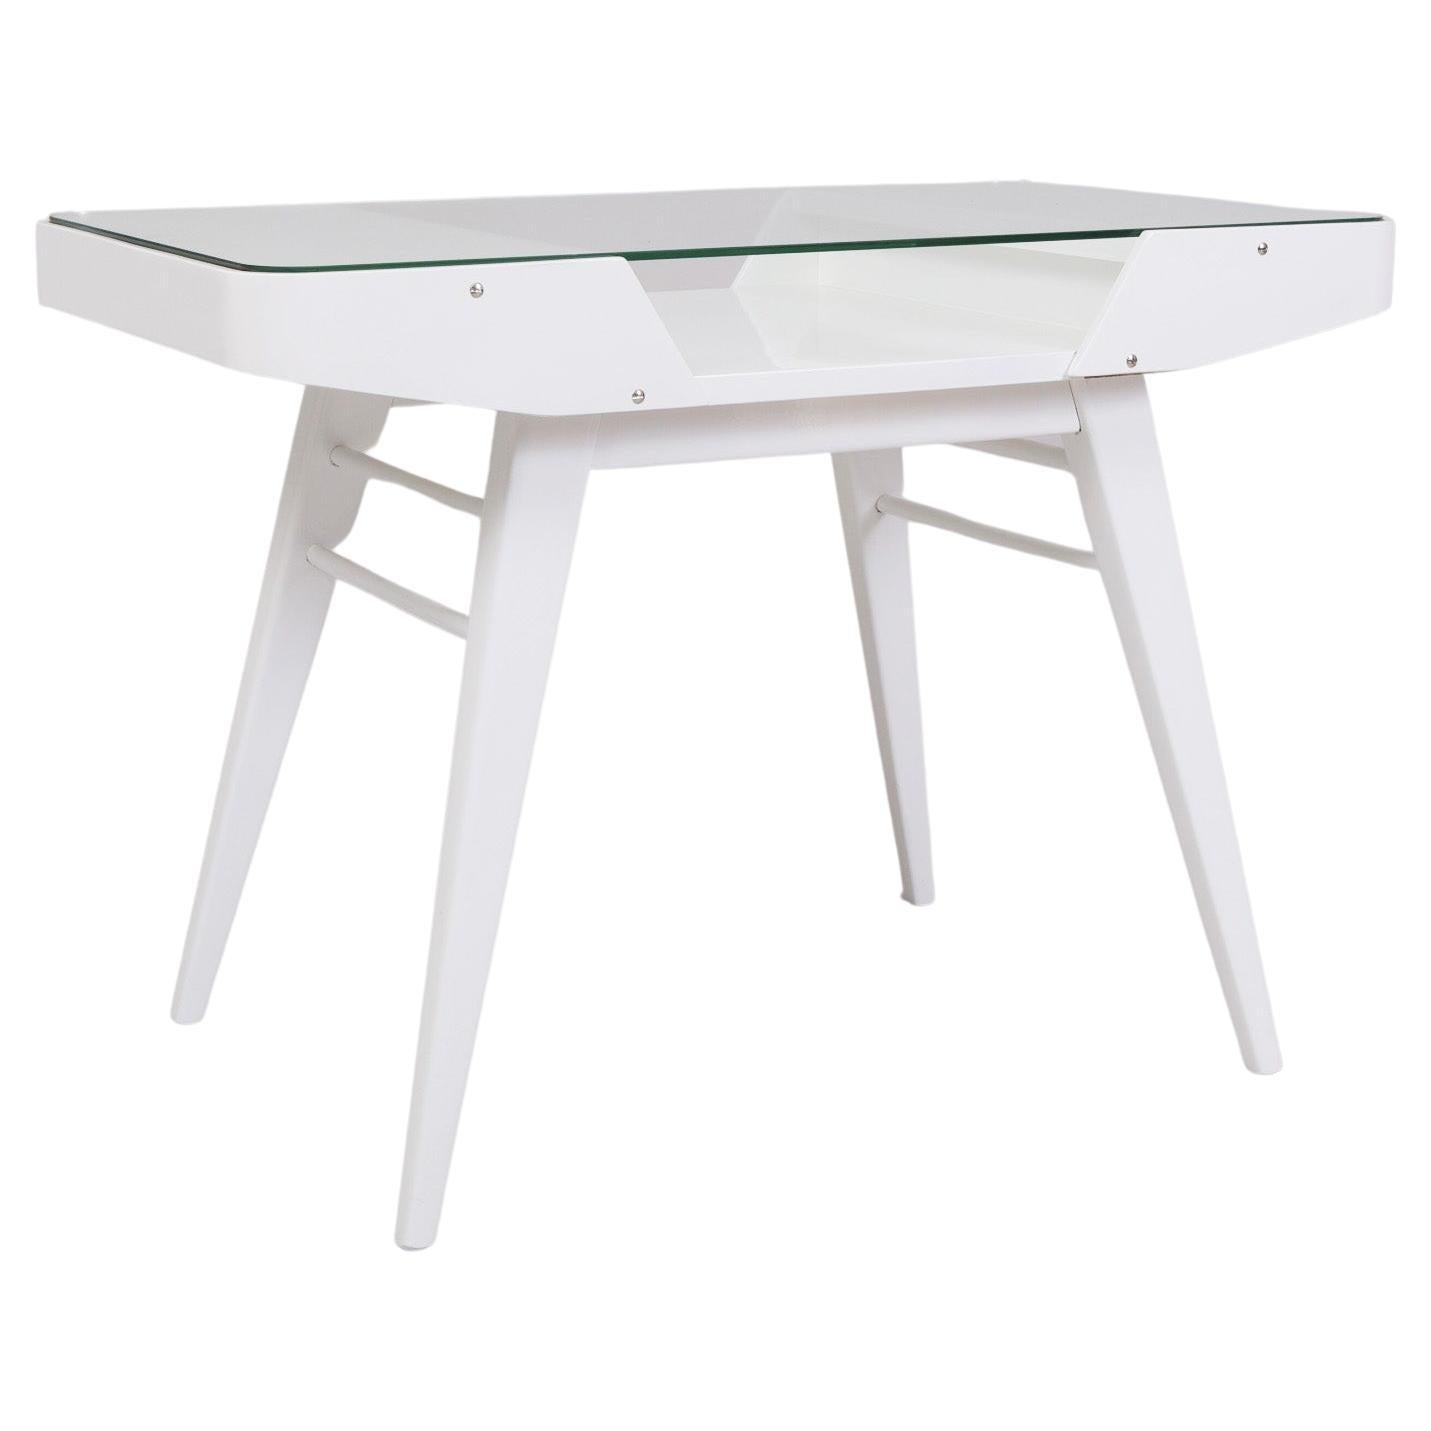 Table blanche mi-siècle fabriquée en Tchèque dans les années 50, conçue par Frantiek Jirk